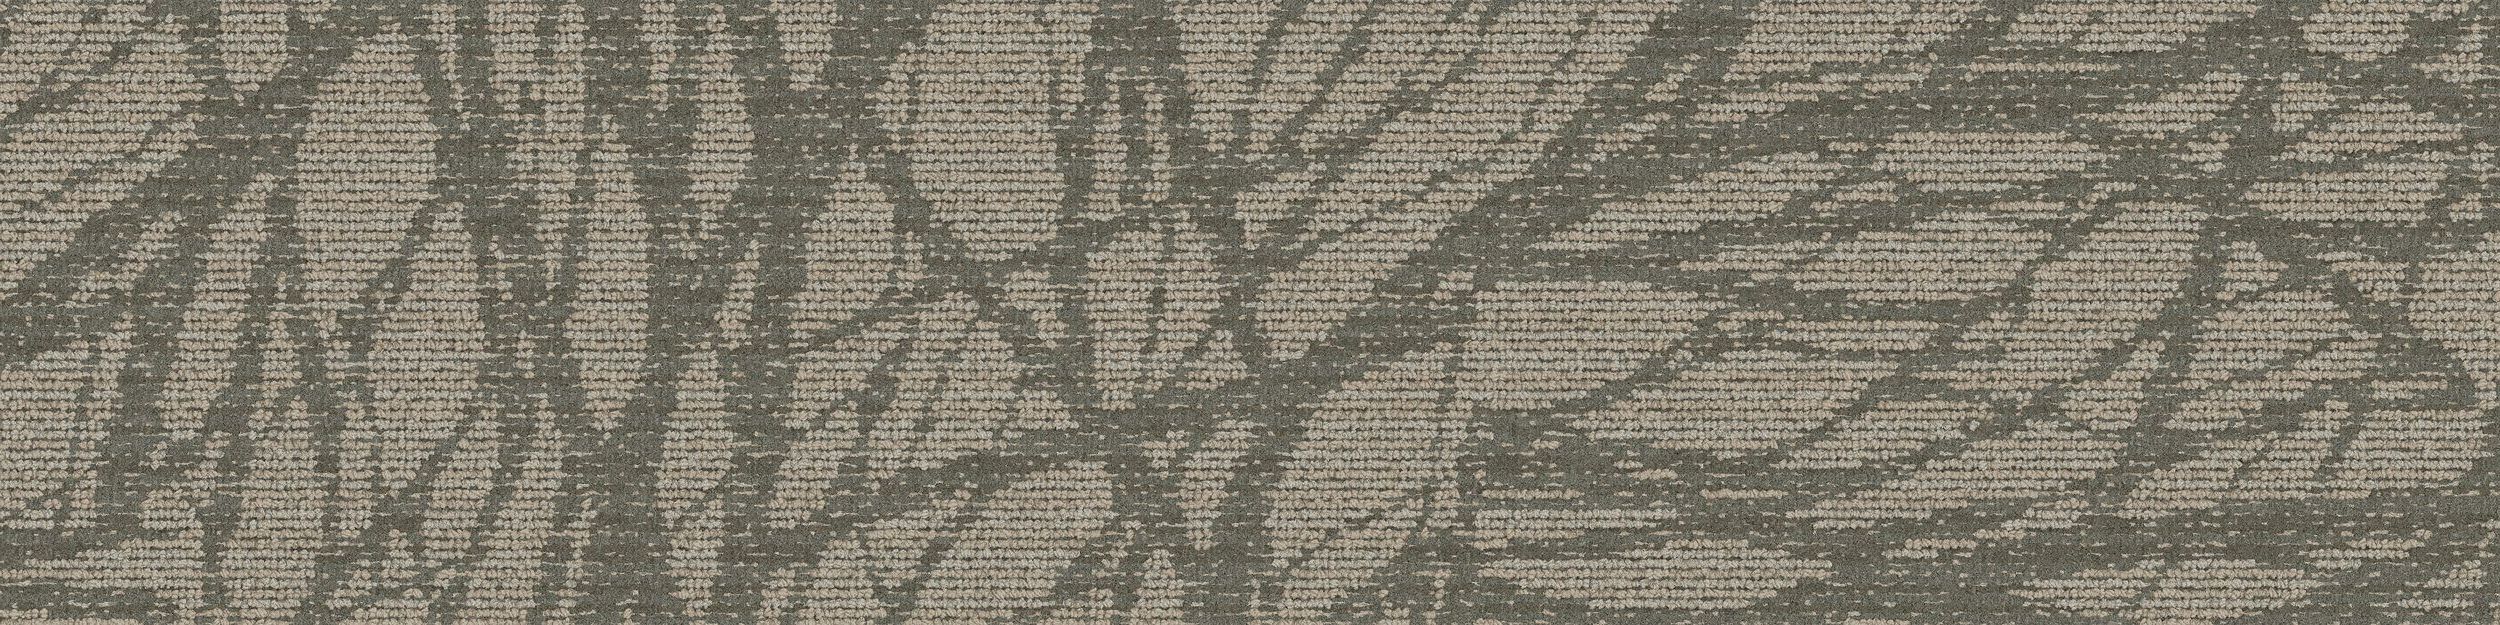 GN161 Carpet Tile In Pewter image number 1